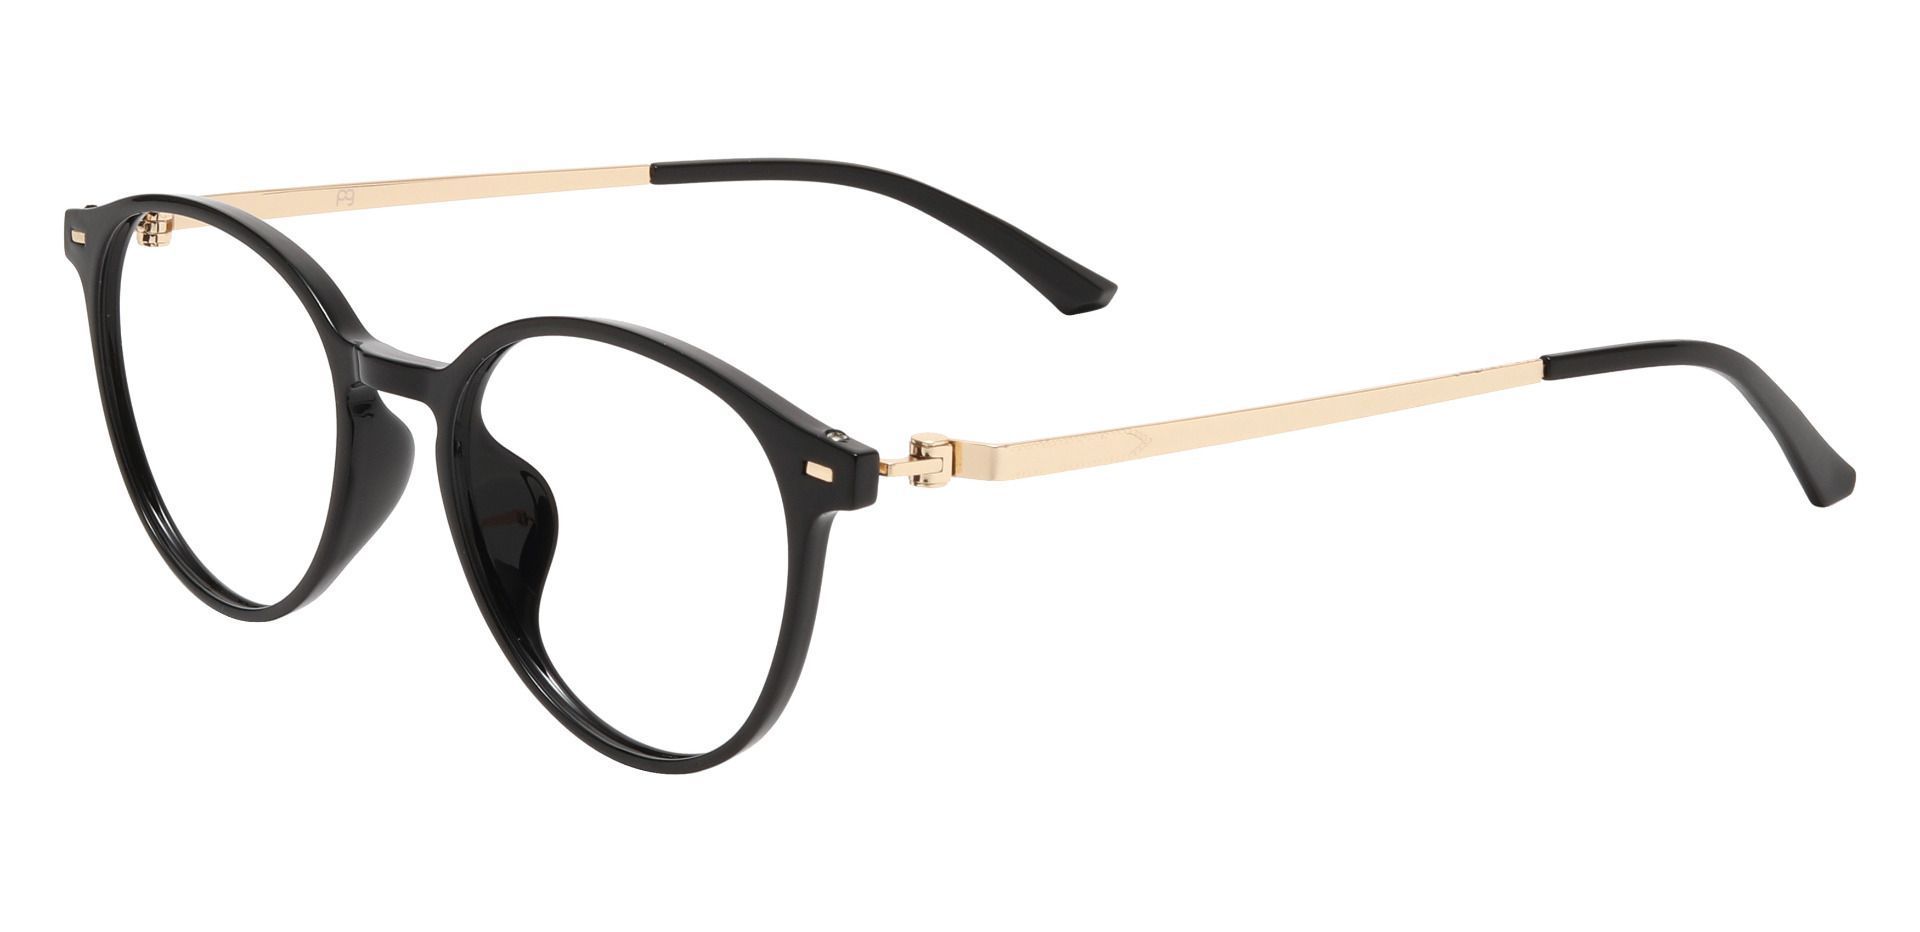 Springer Round Lined Bifocal Glasses - Black